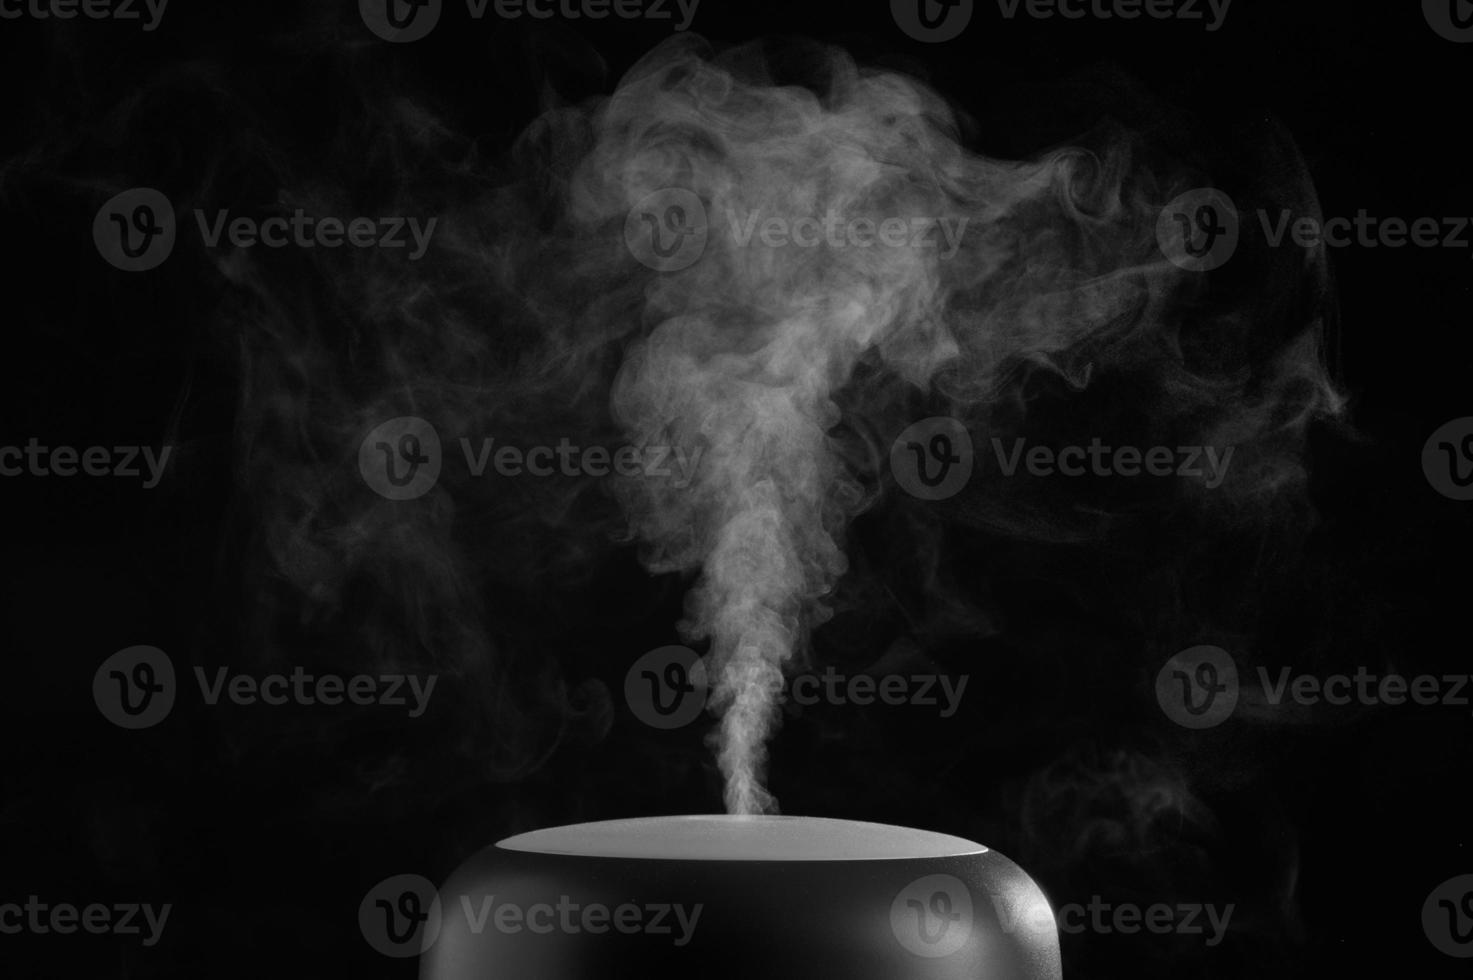 umidificador de ar moderno em fundo preto. close-up de vapor branco. o conceito de umidificação do ar. foto com espaço de cópia.